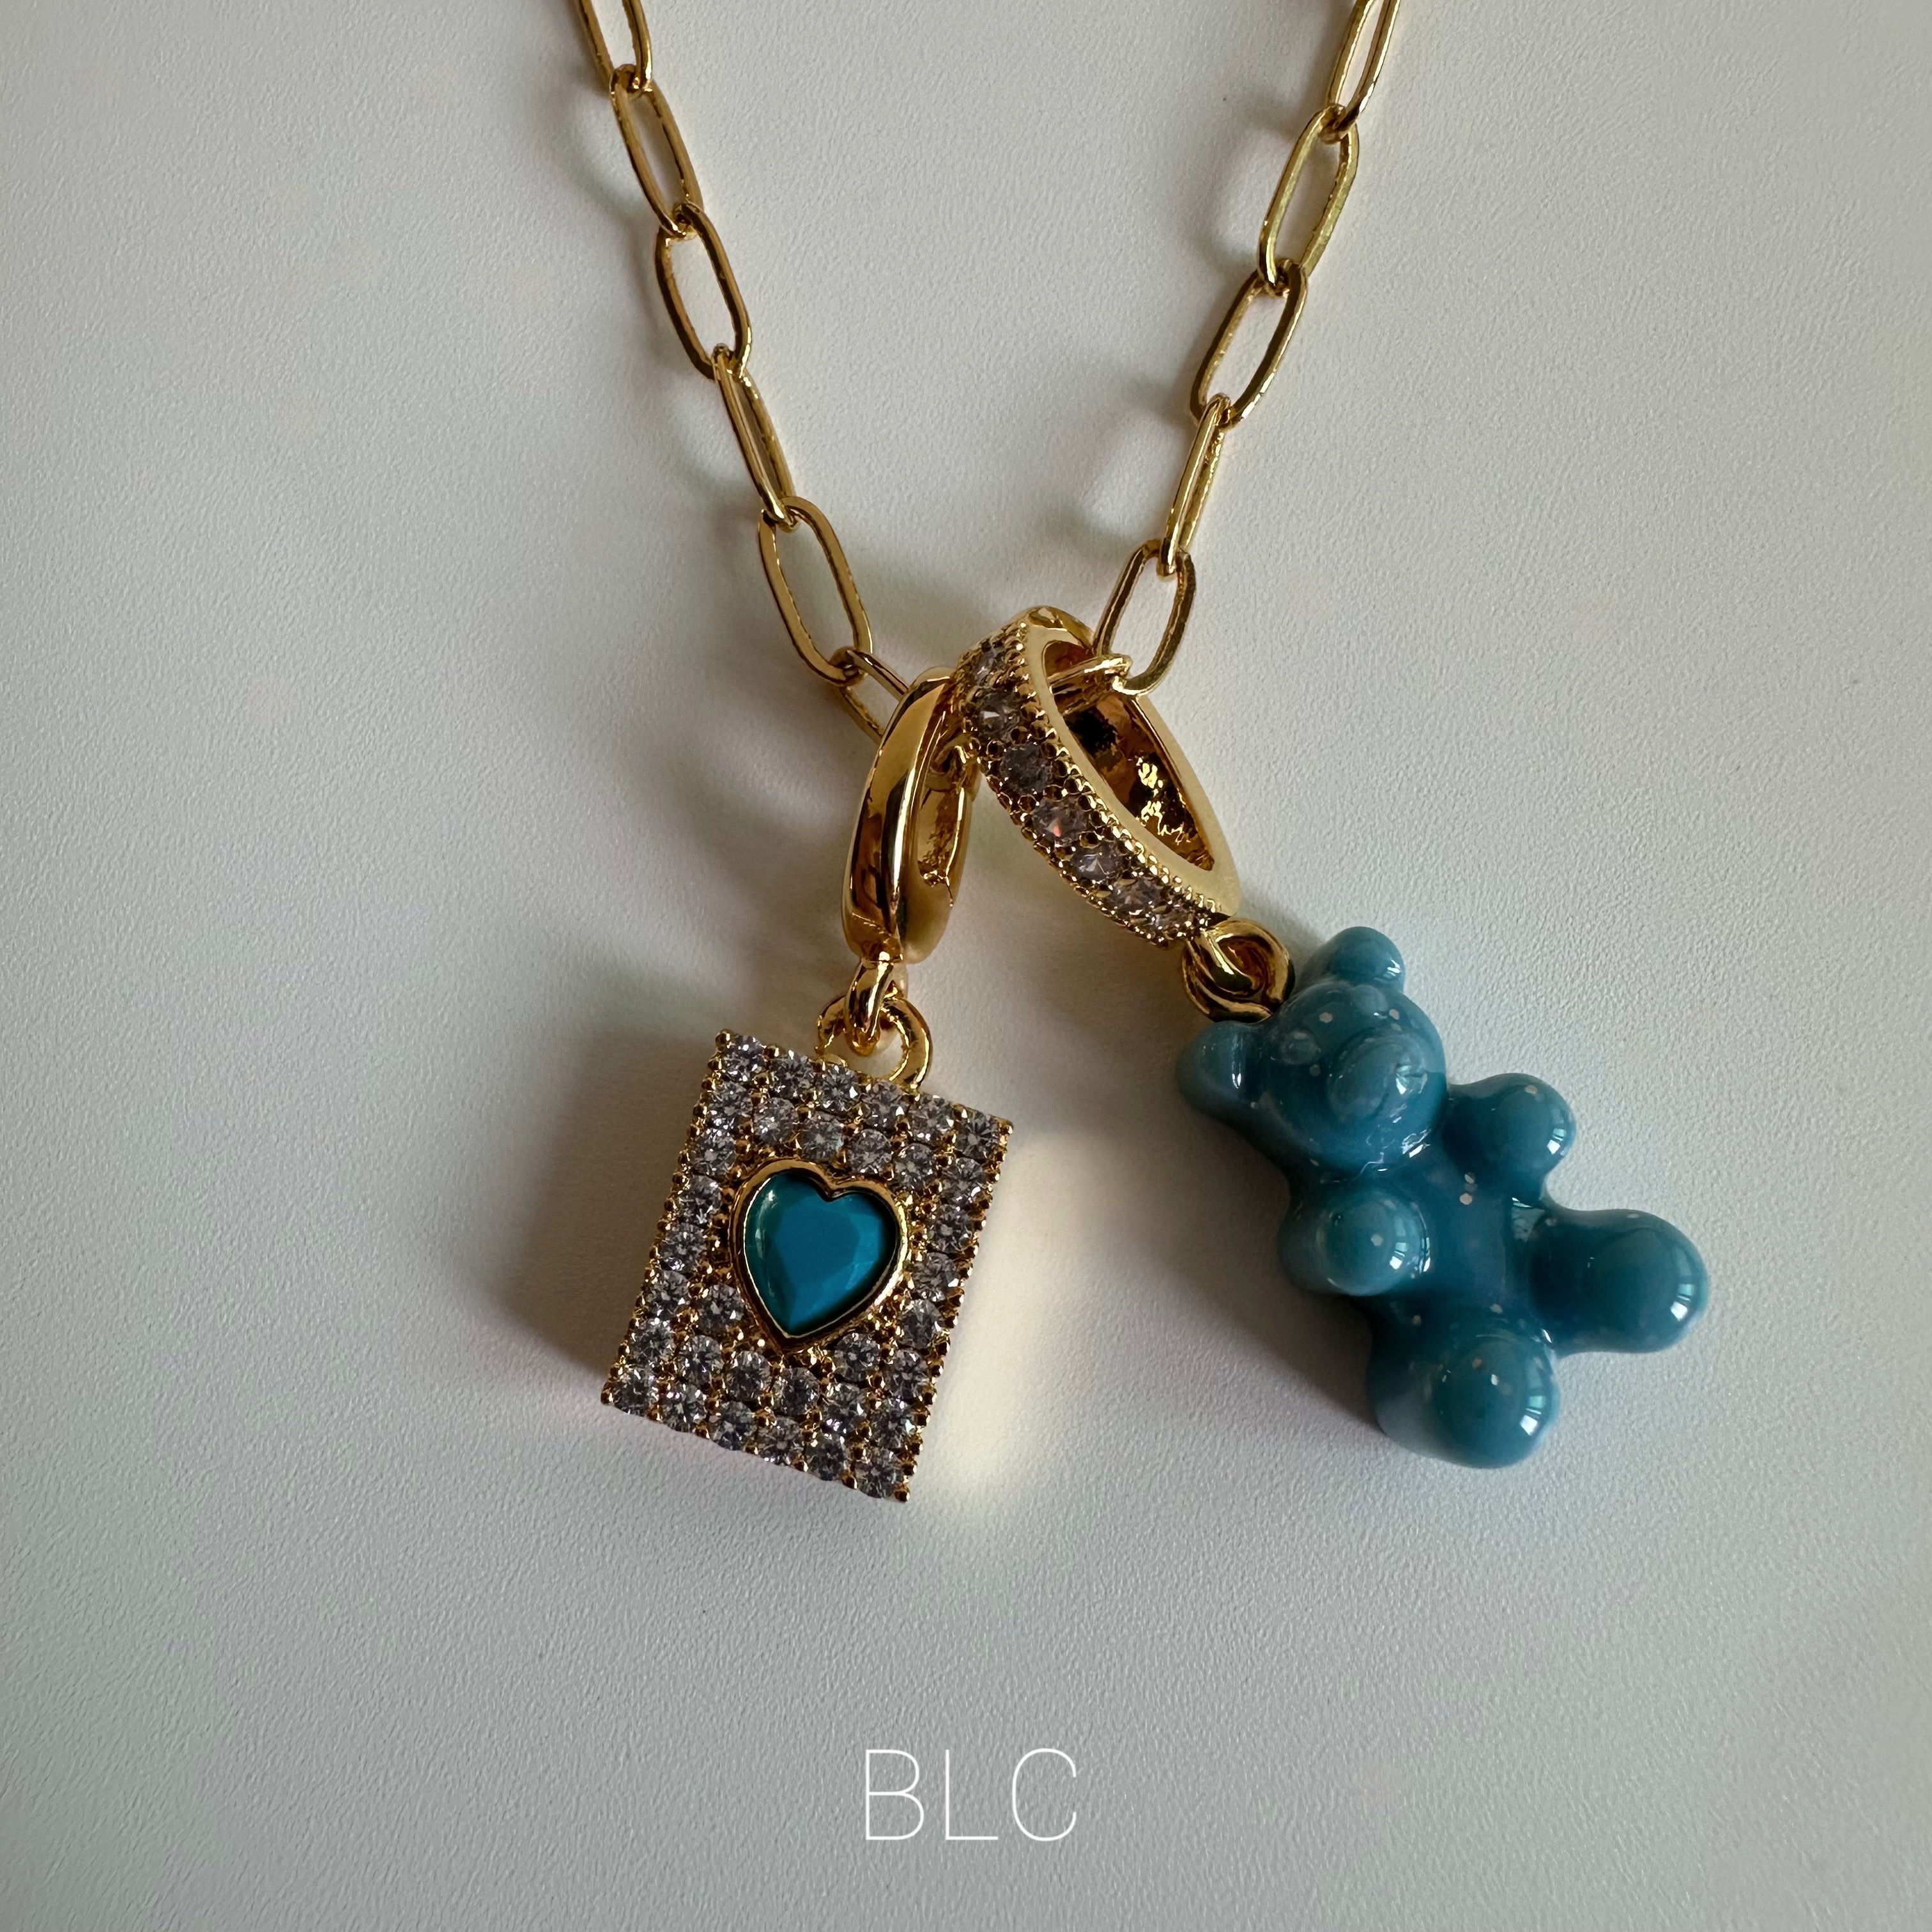 Bluebear set necklace